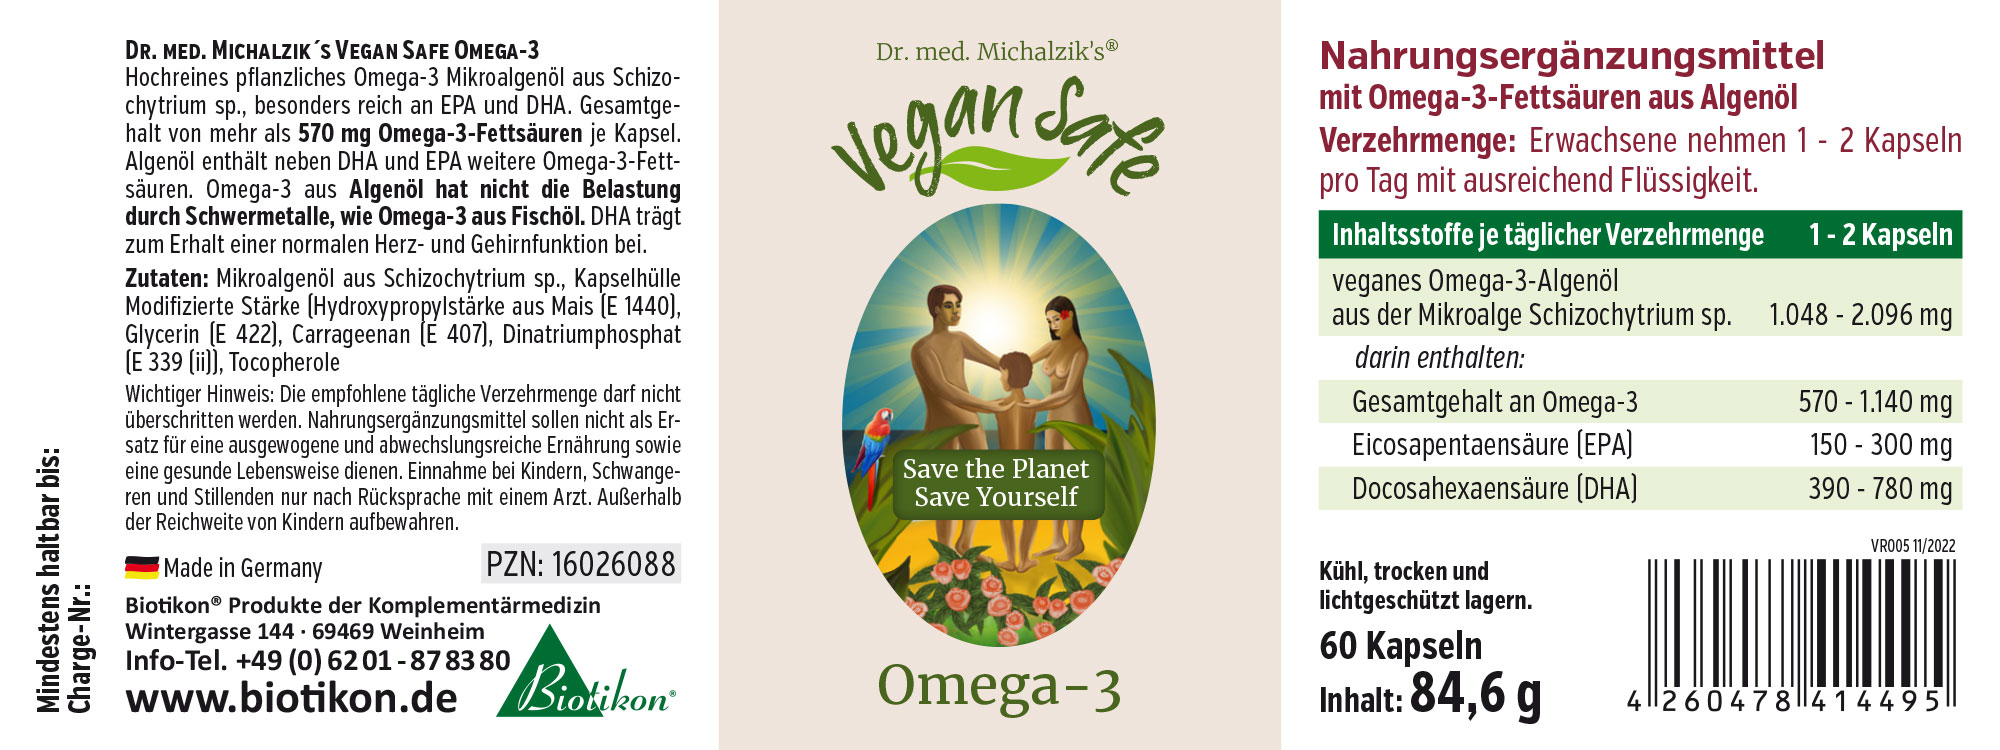 Vegan Safe Oméga 3